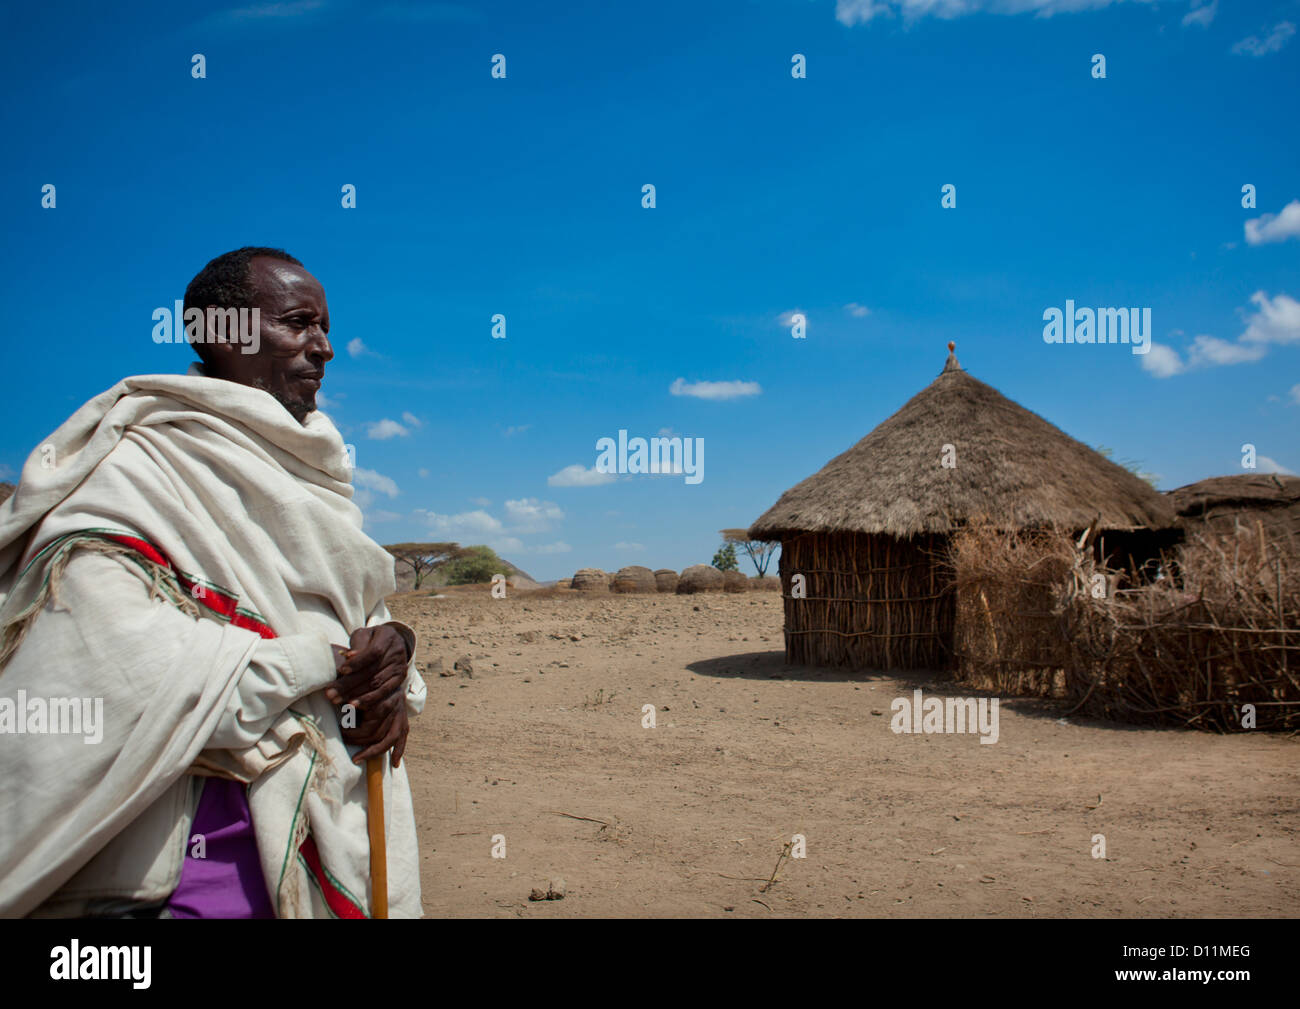 Karrayyu Stamm während der Gadaaa Zeremonie, Metahara, Äthiopien Stockfoto